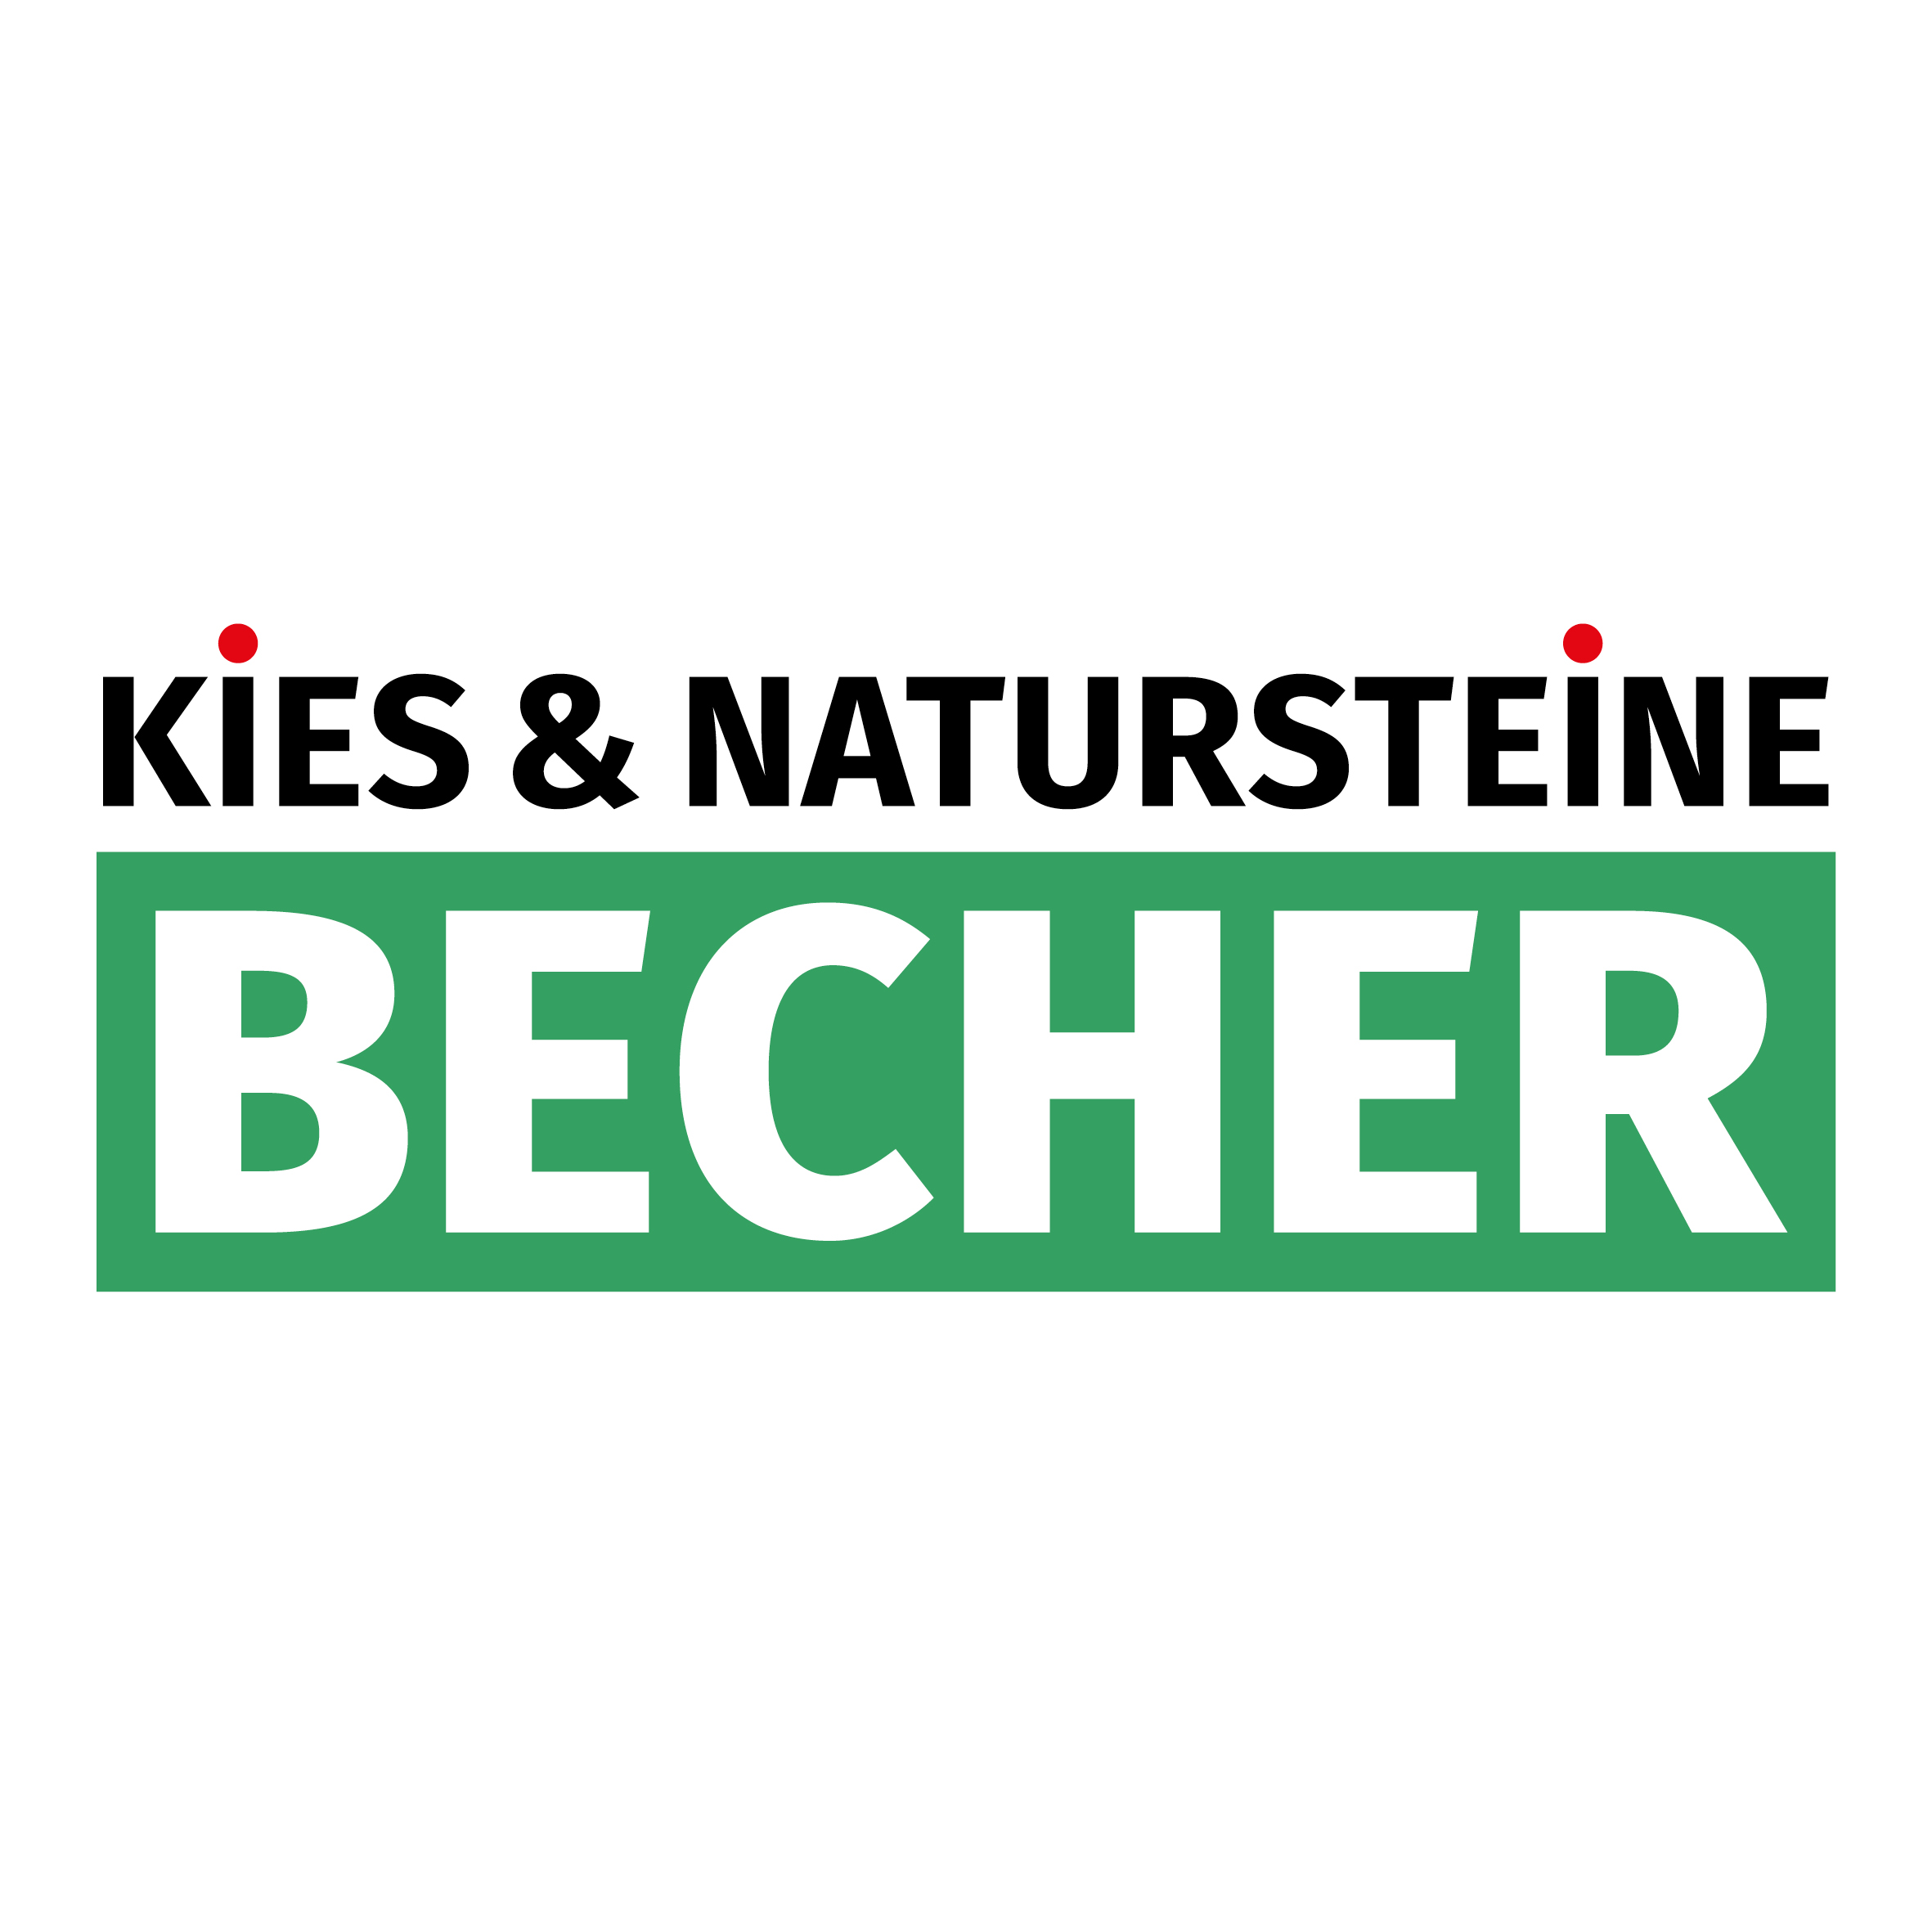 Kies & Natursteine Becher in Mudersbach an der Sieg - Logo